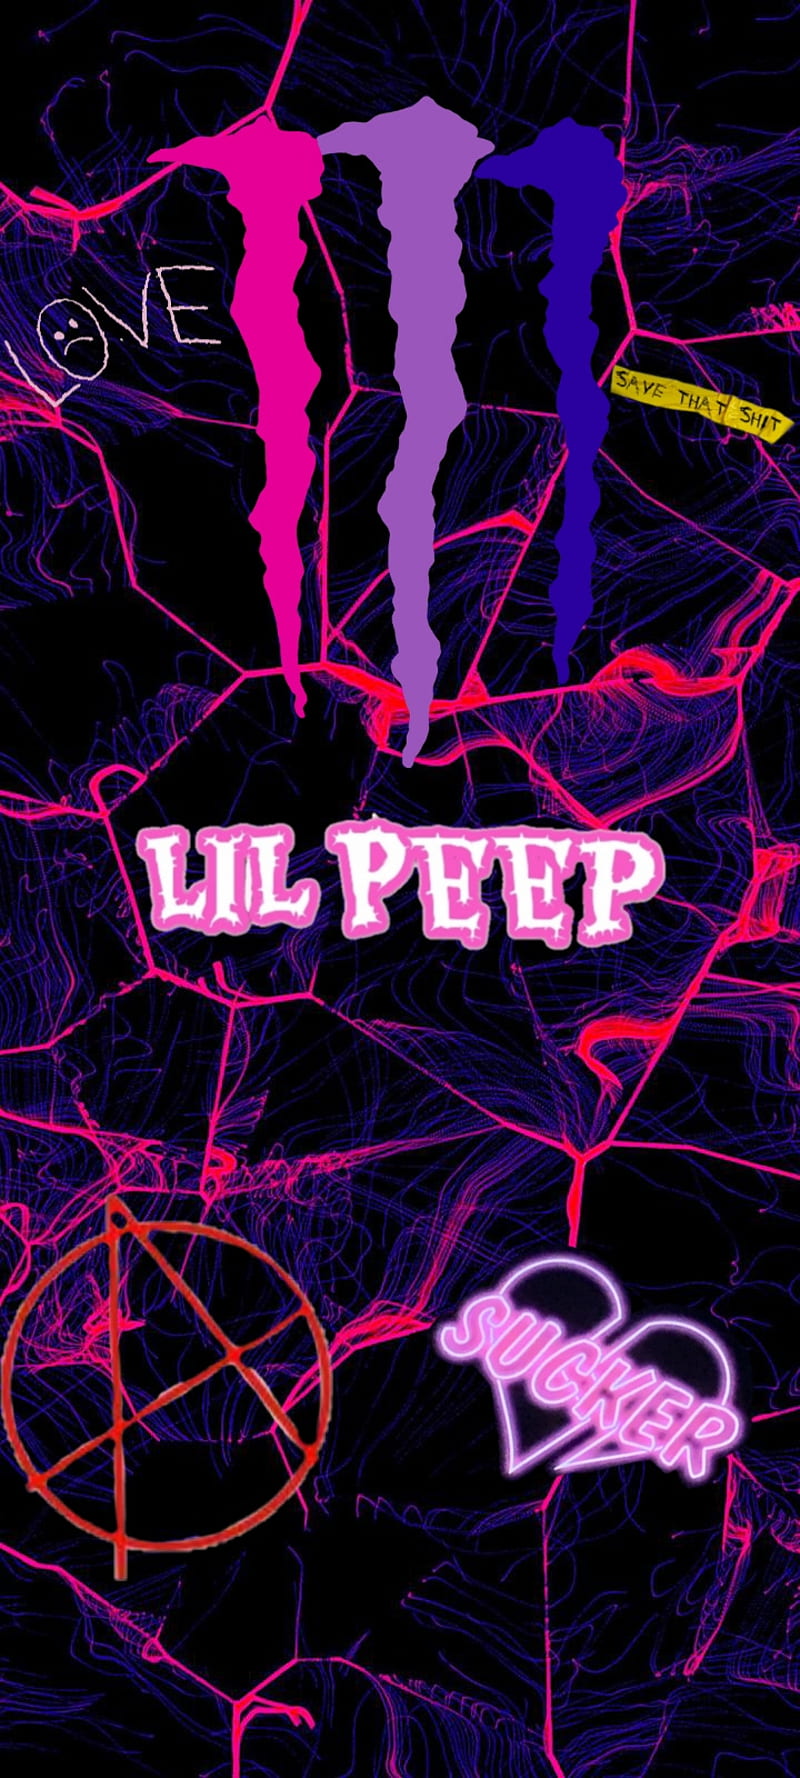 Với hình nền Lil Peep, bức tranh của bạn sẽ trở nên độc đáo và phong cách hơn bao giờ hết. Hãy để hình nền này thể hiện cá tính của bạn với sự độc đáo của nó.